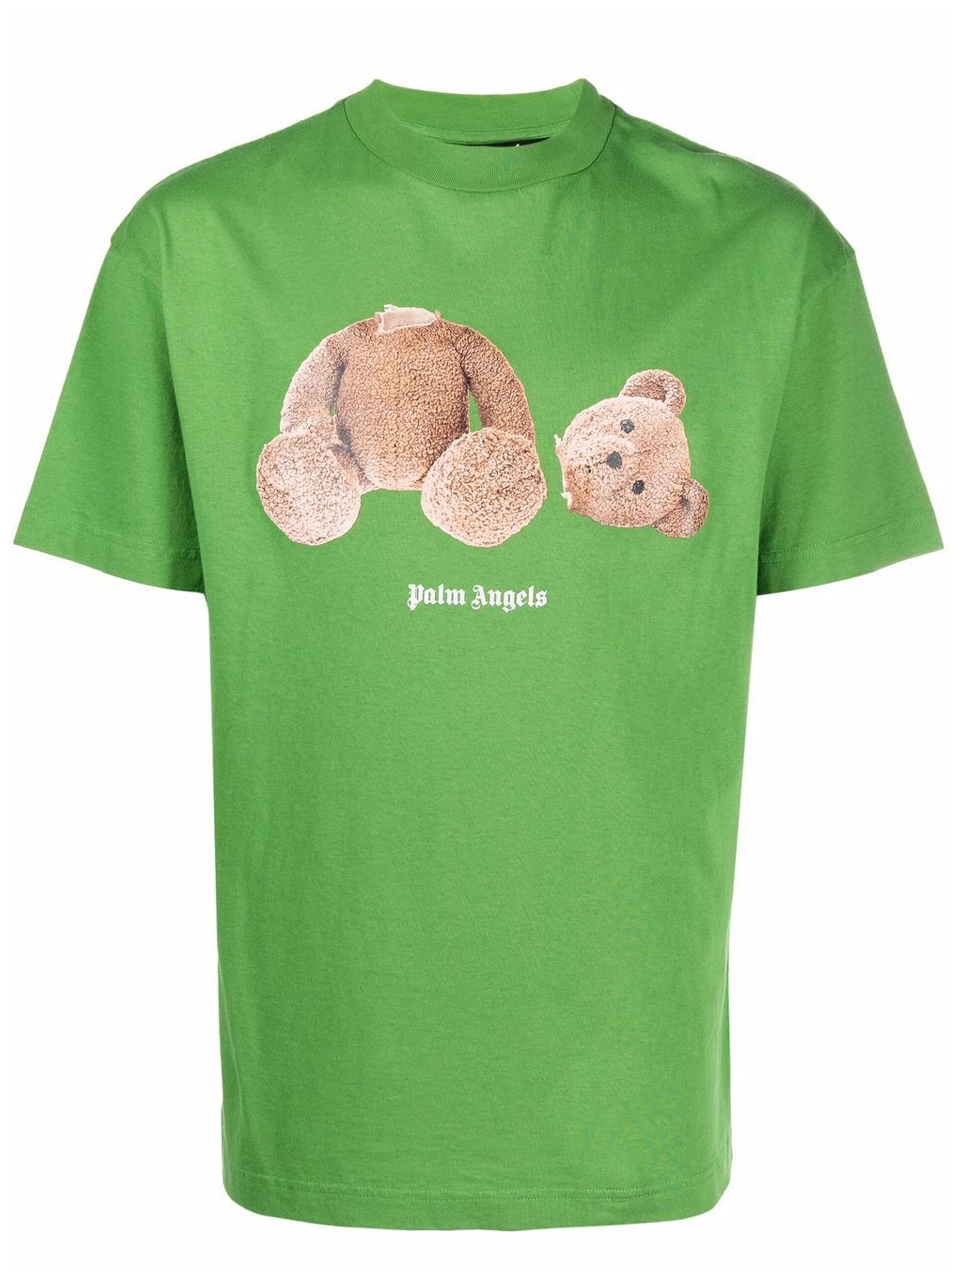 Camiseta Palm Angels Verde Estampa Urso - SuaGrife